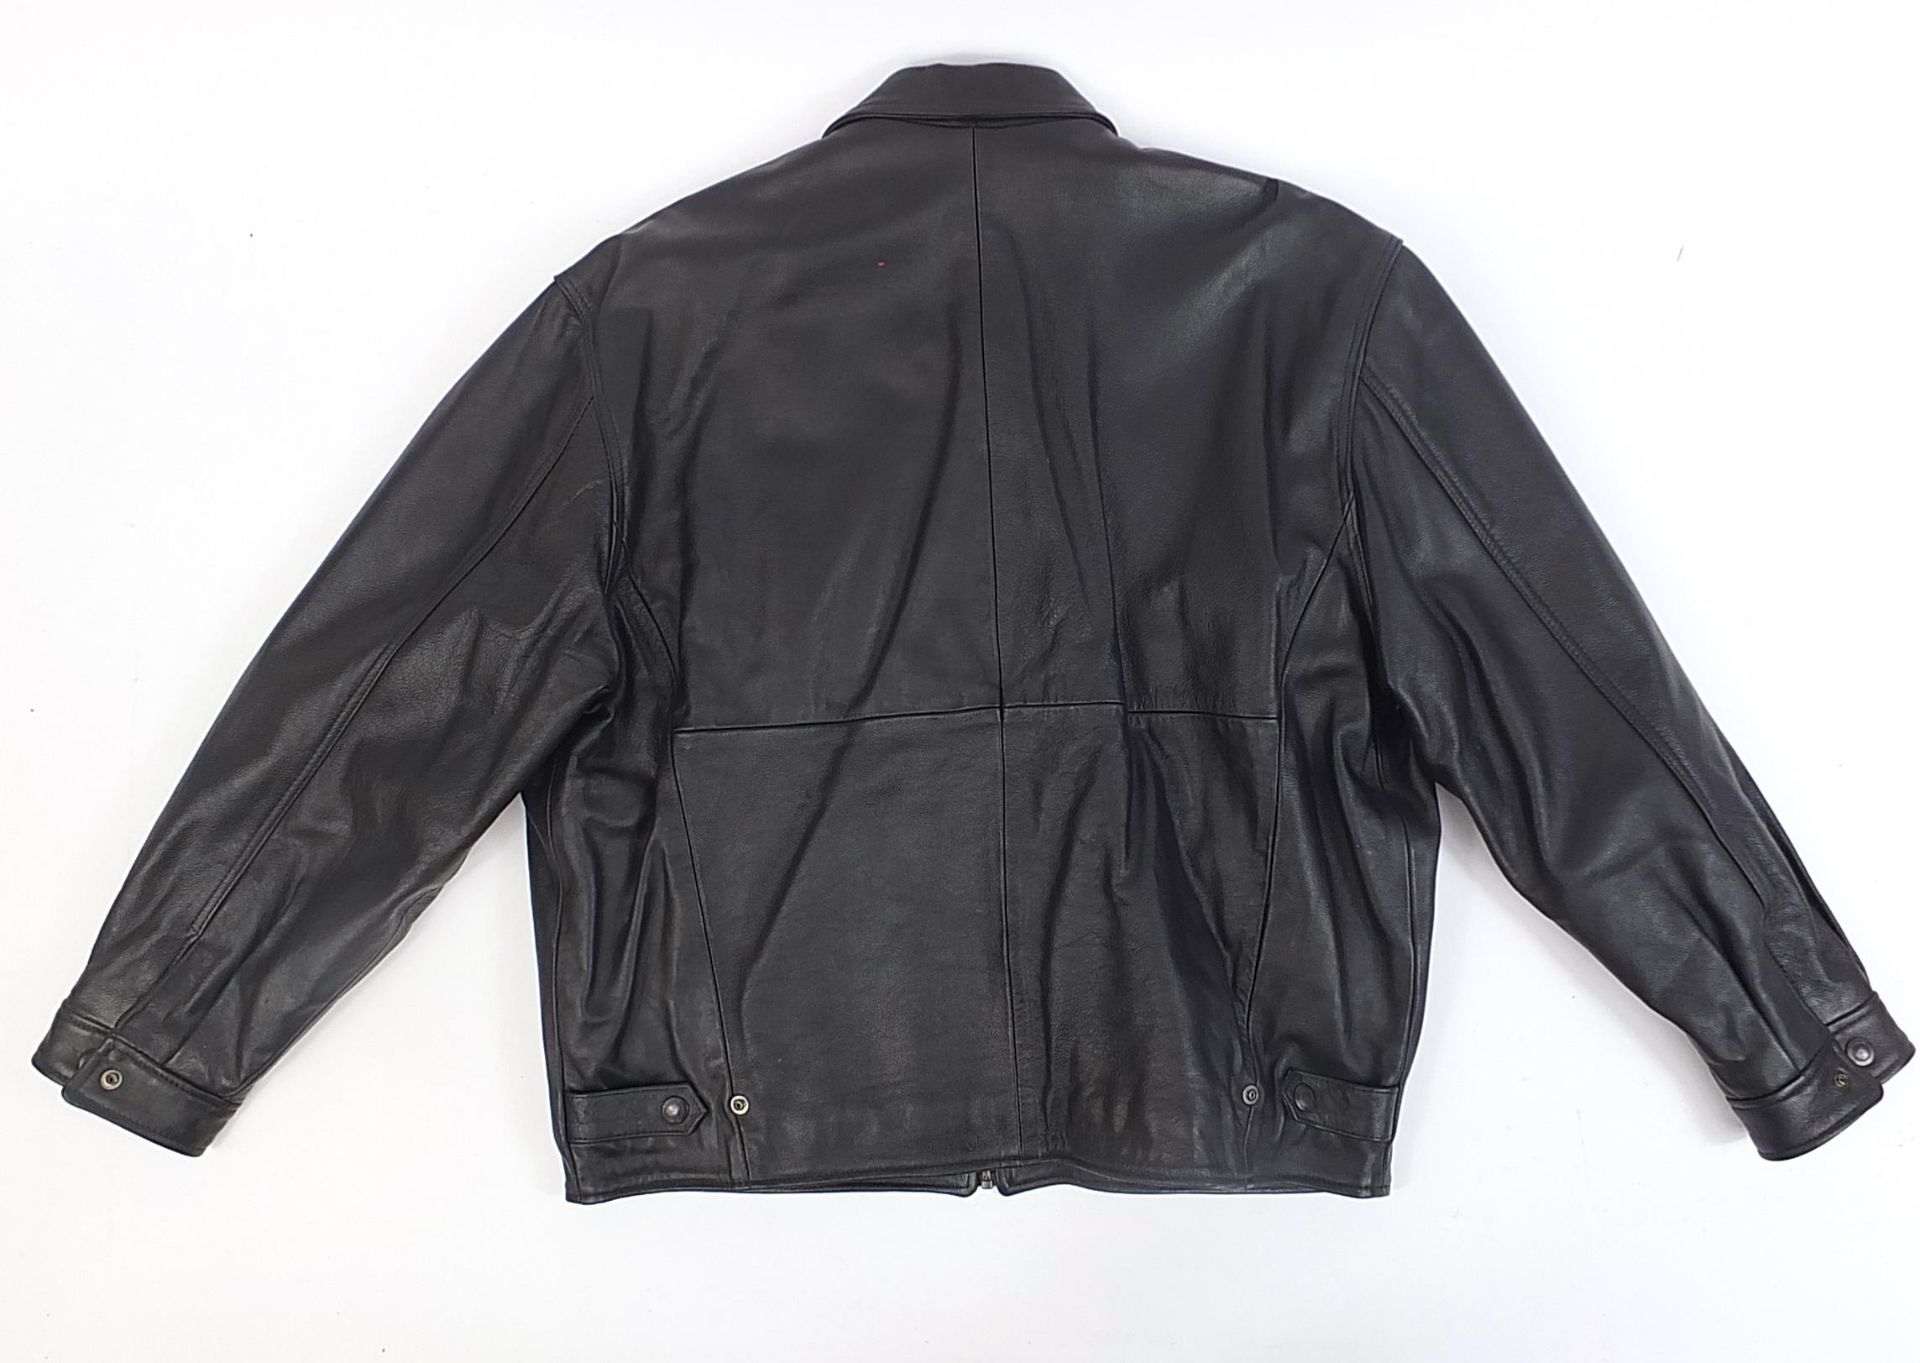 Judge Dredd Summer 1995 leather jacket, size L - Image 2 of 2